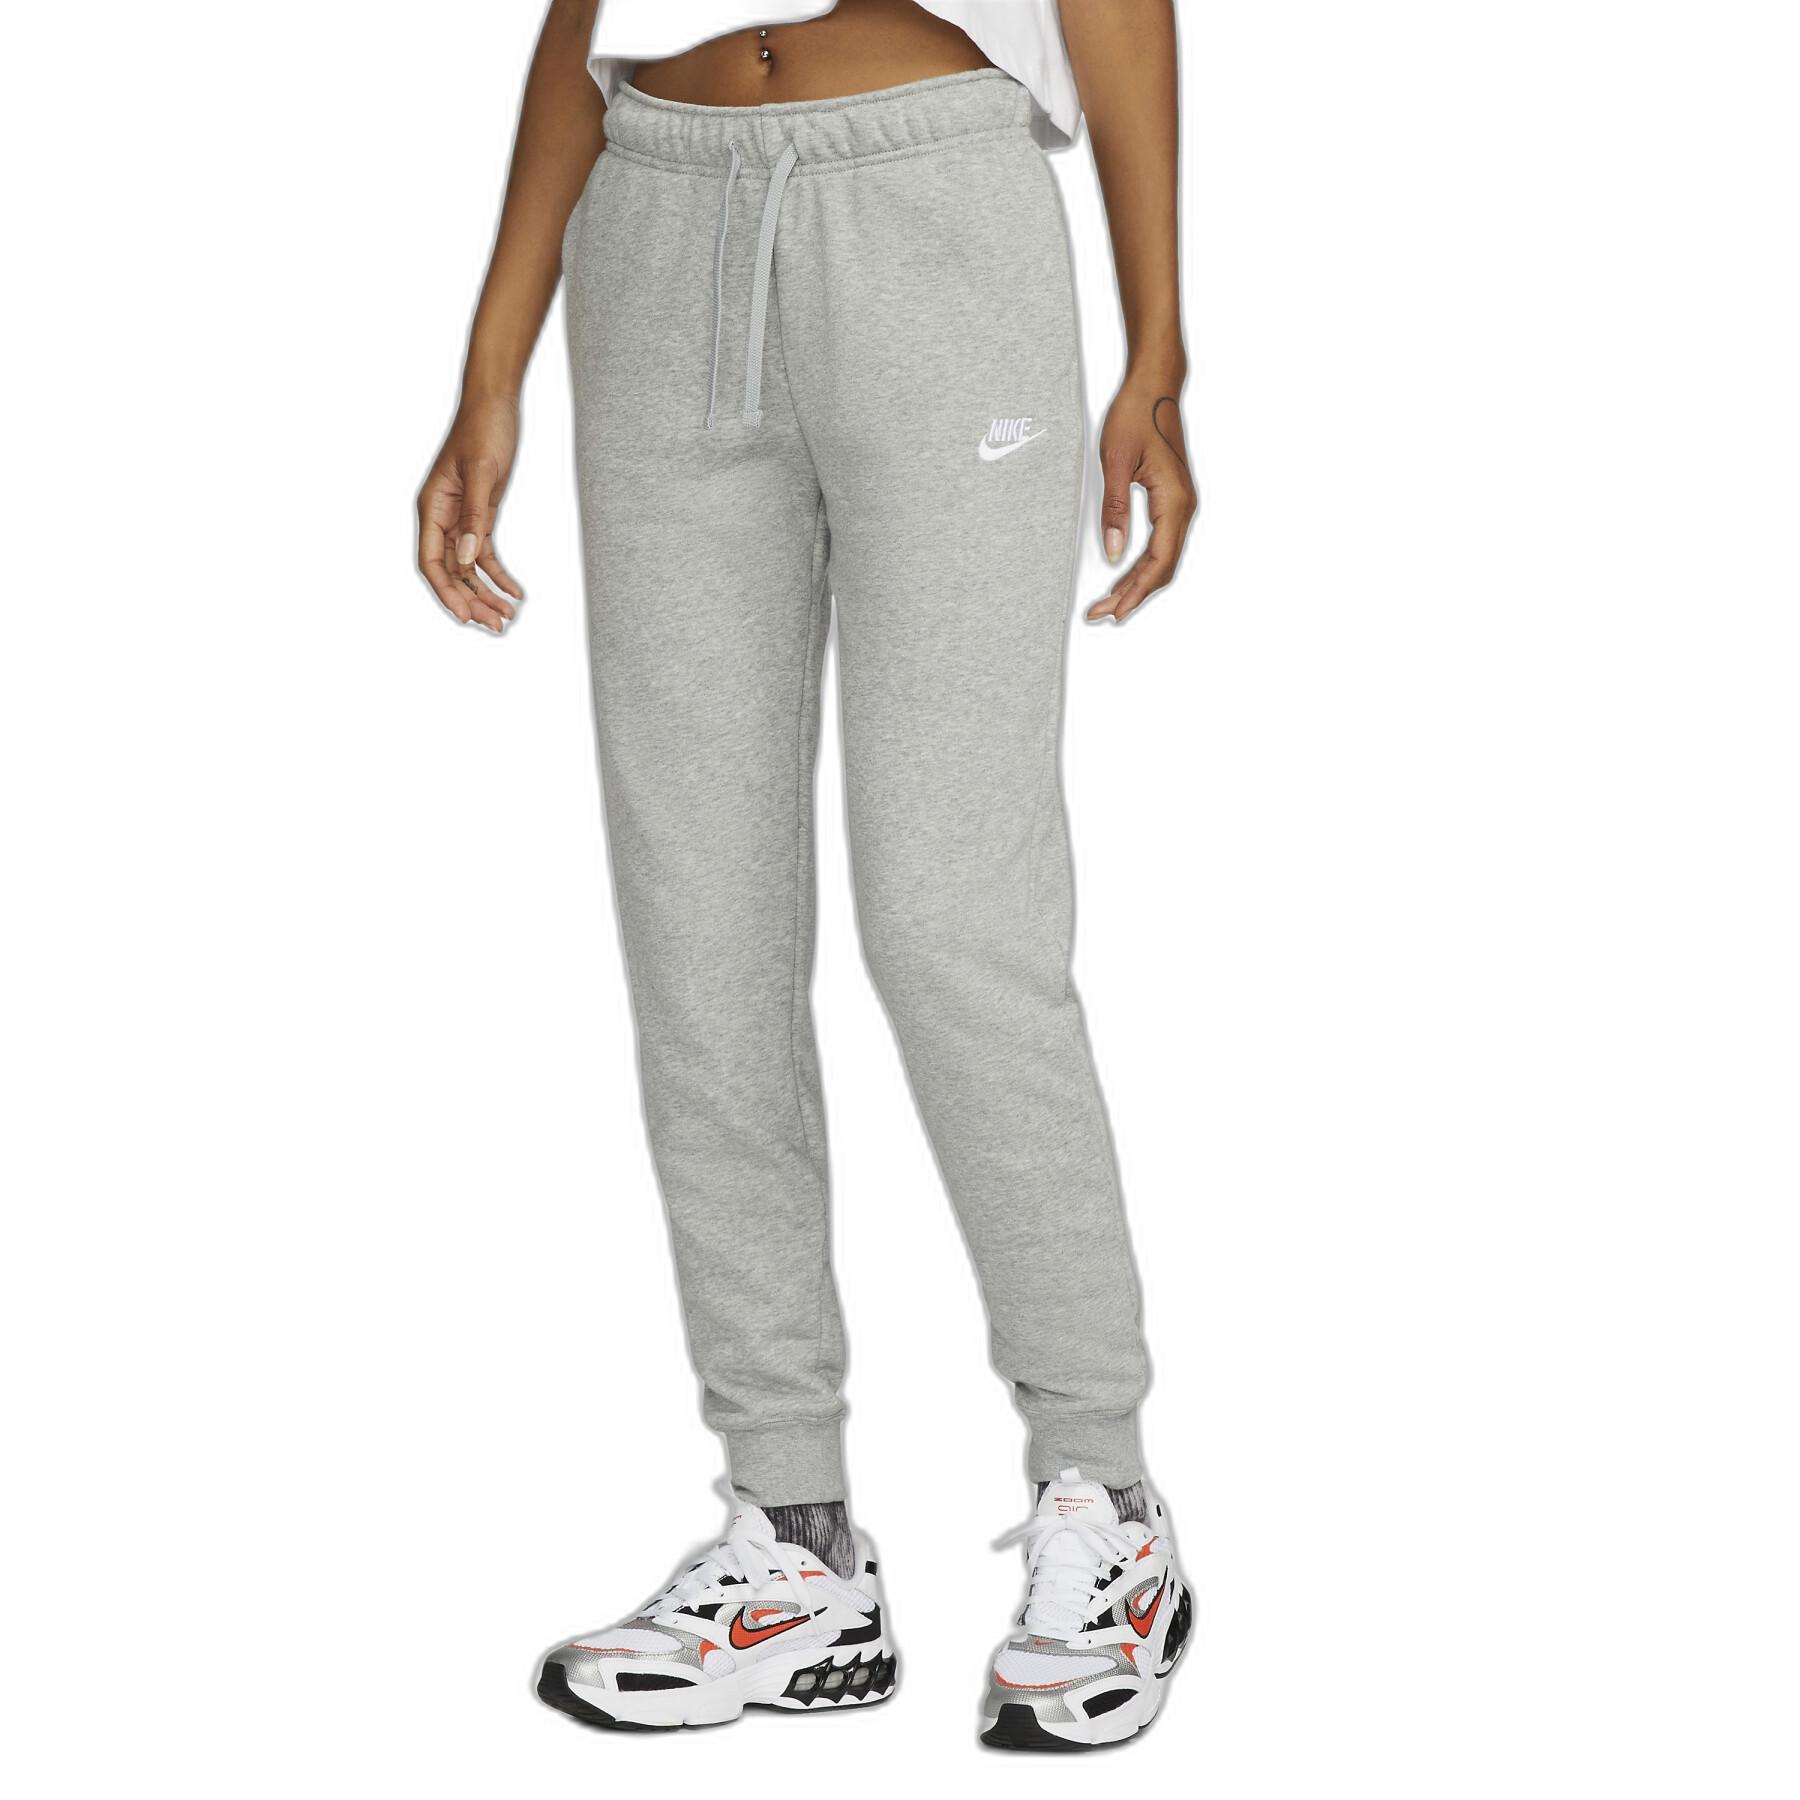 Women's jogging suit Nike Sportswear Club Fleece - Nike - Brands - Lifestyle